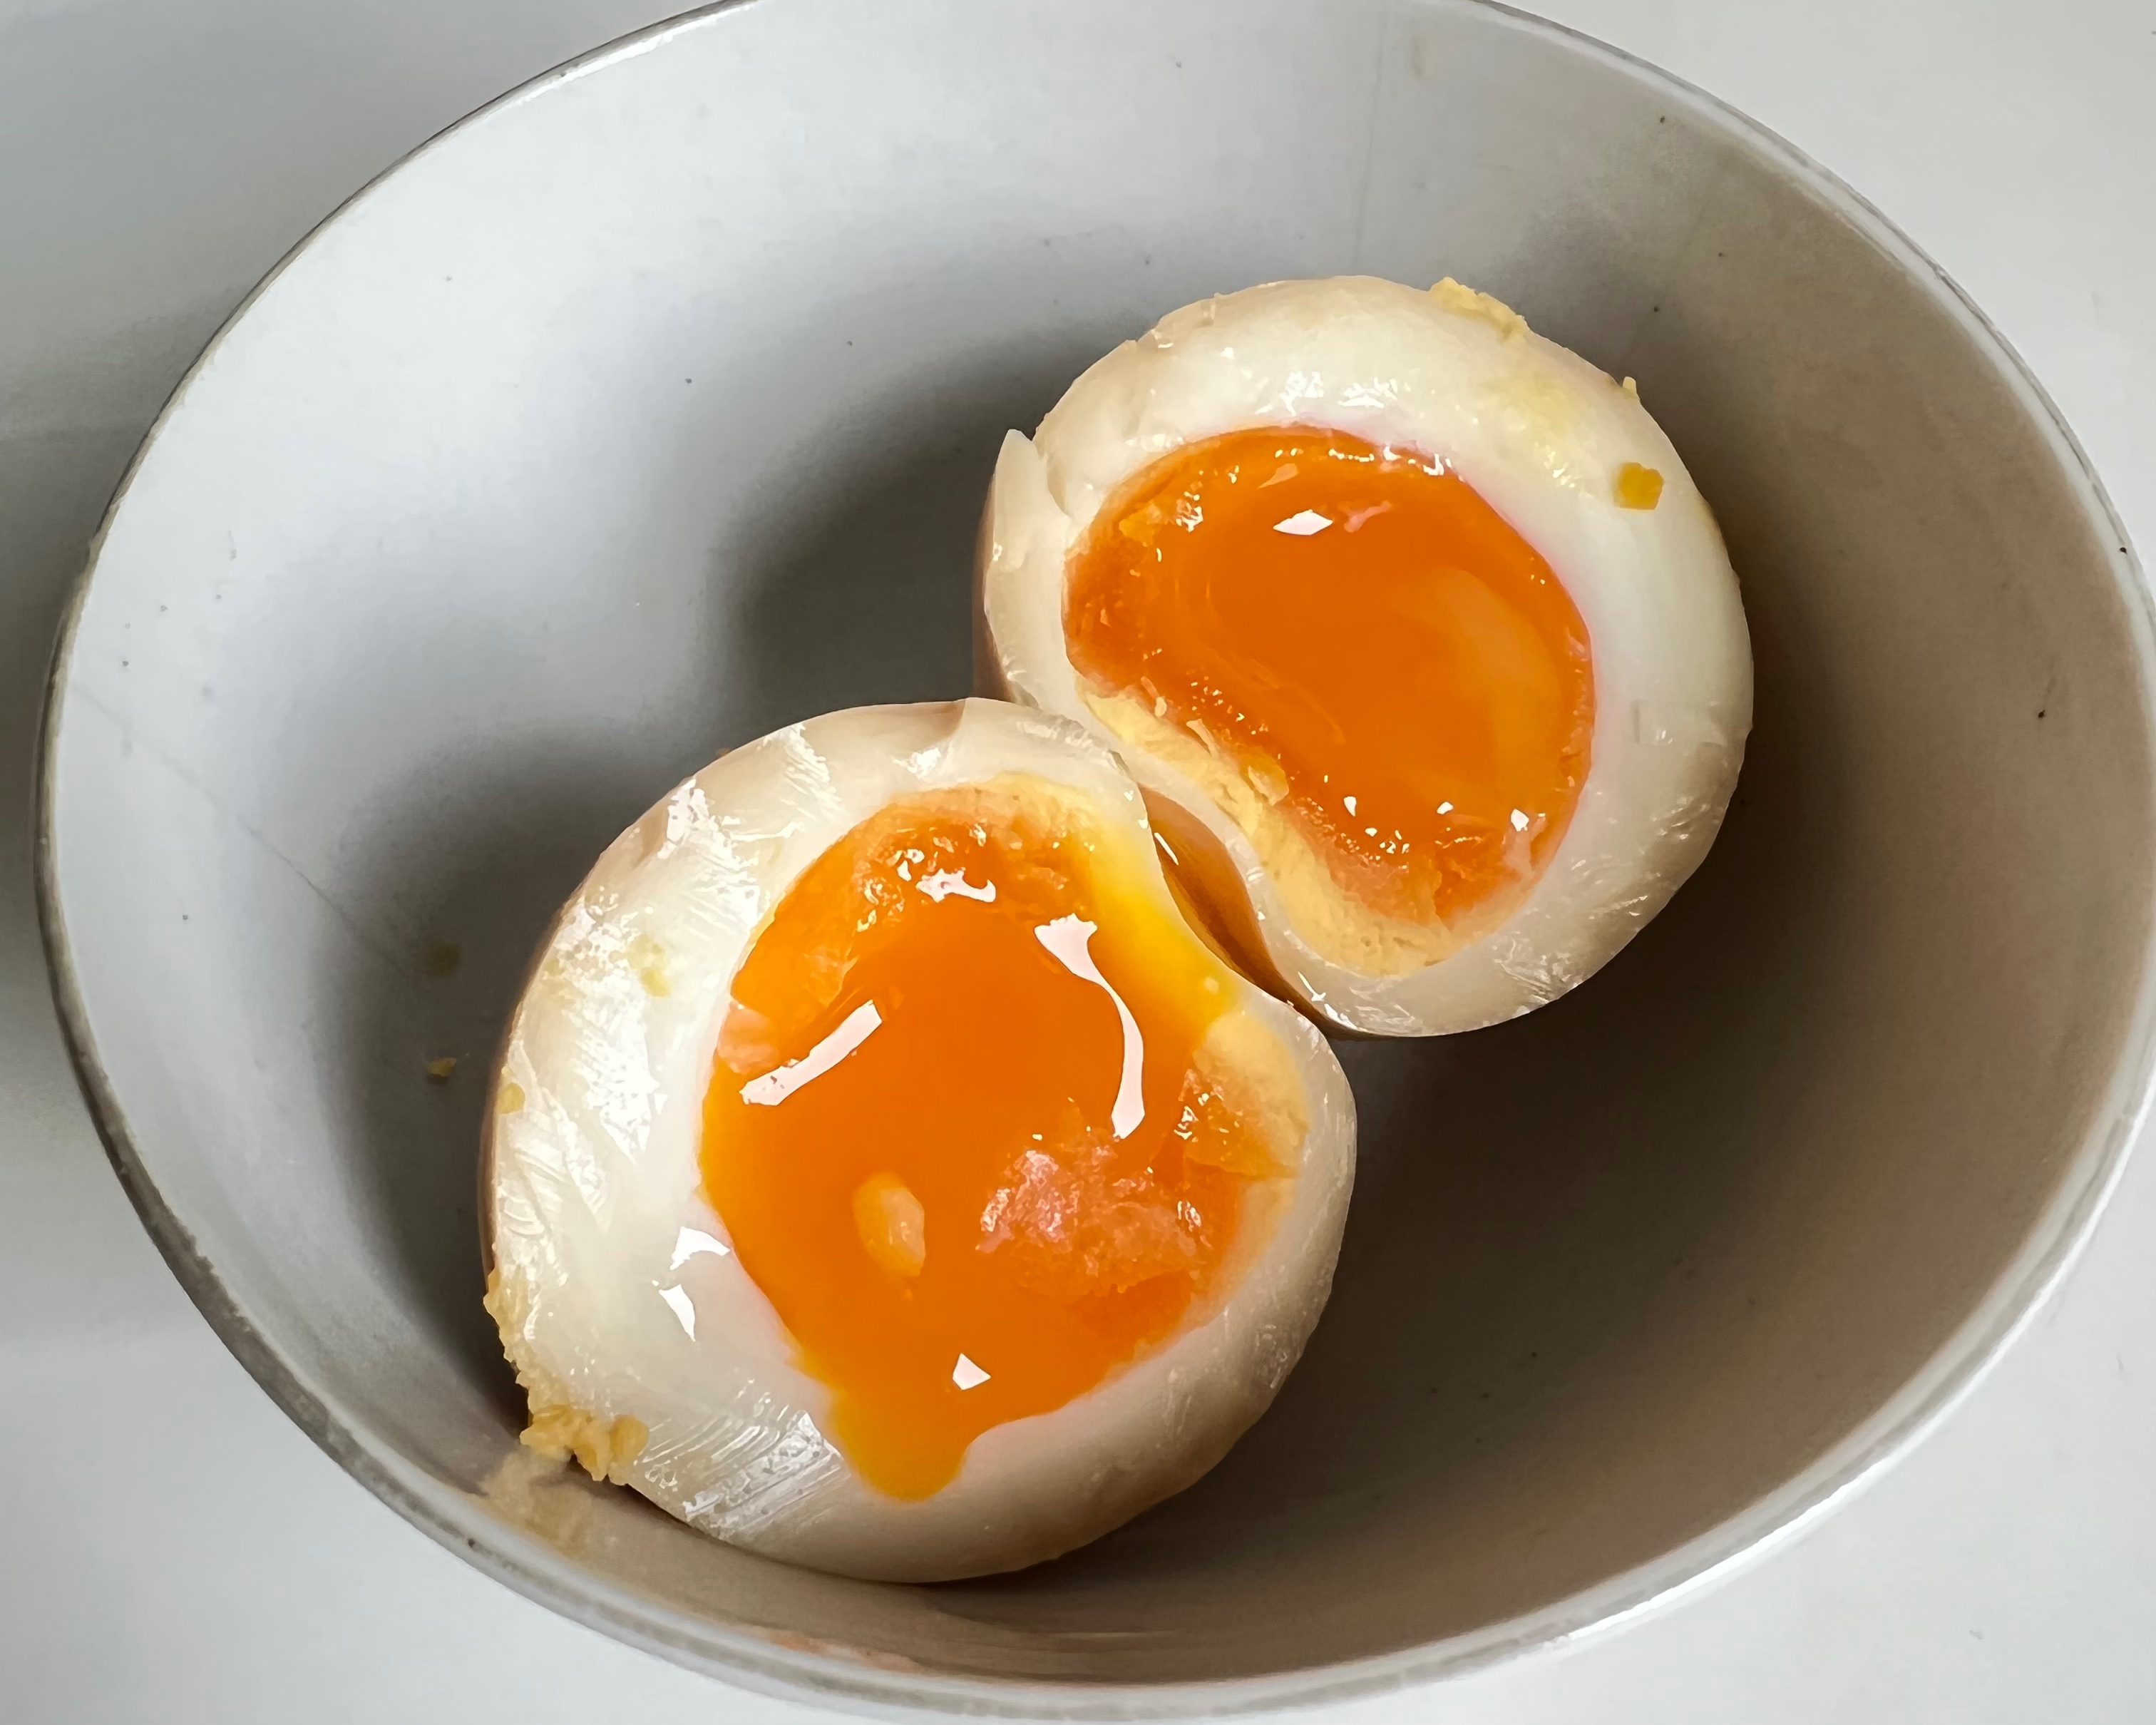 简易不减味-深受小朋友喜爱的日式溏心蛋的做法